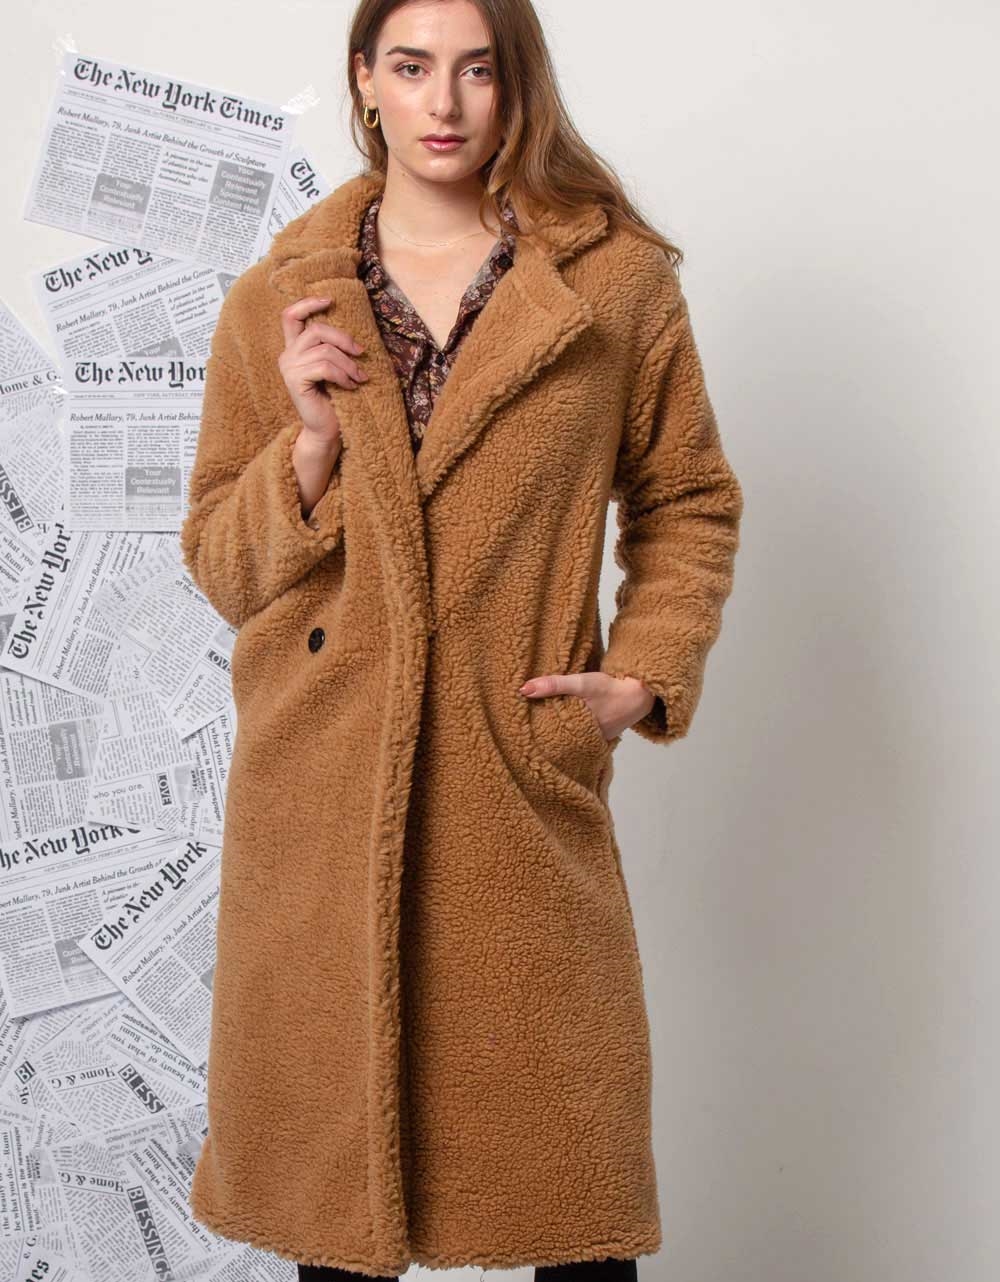 Εικόνα από Γυναικείo παλτό από οικολογική γούνα teddy μακρύ Κάμελ